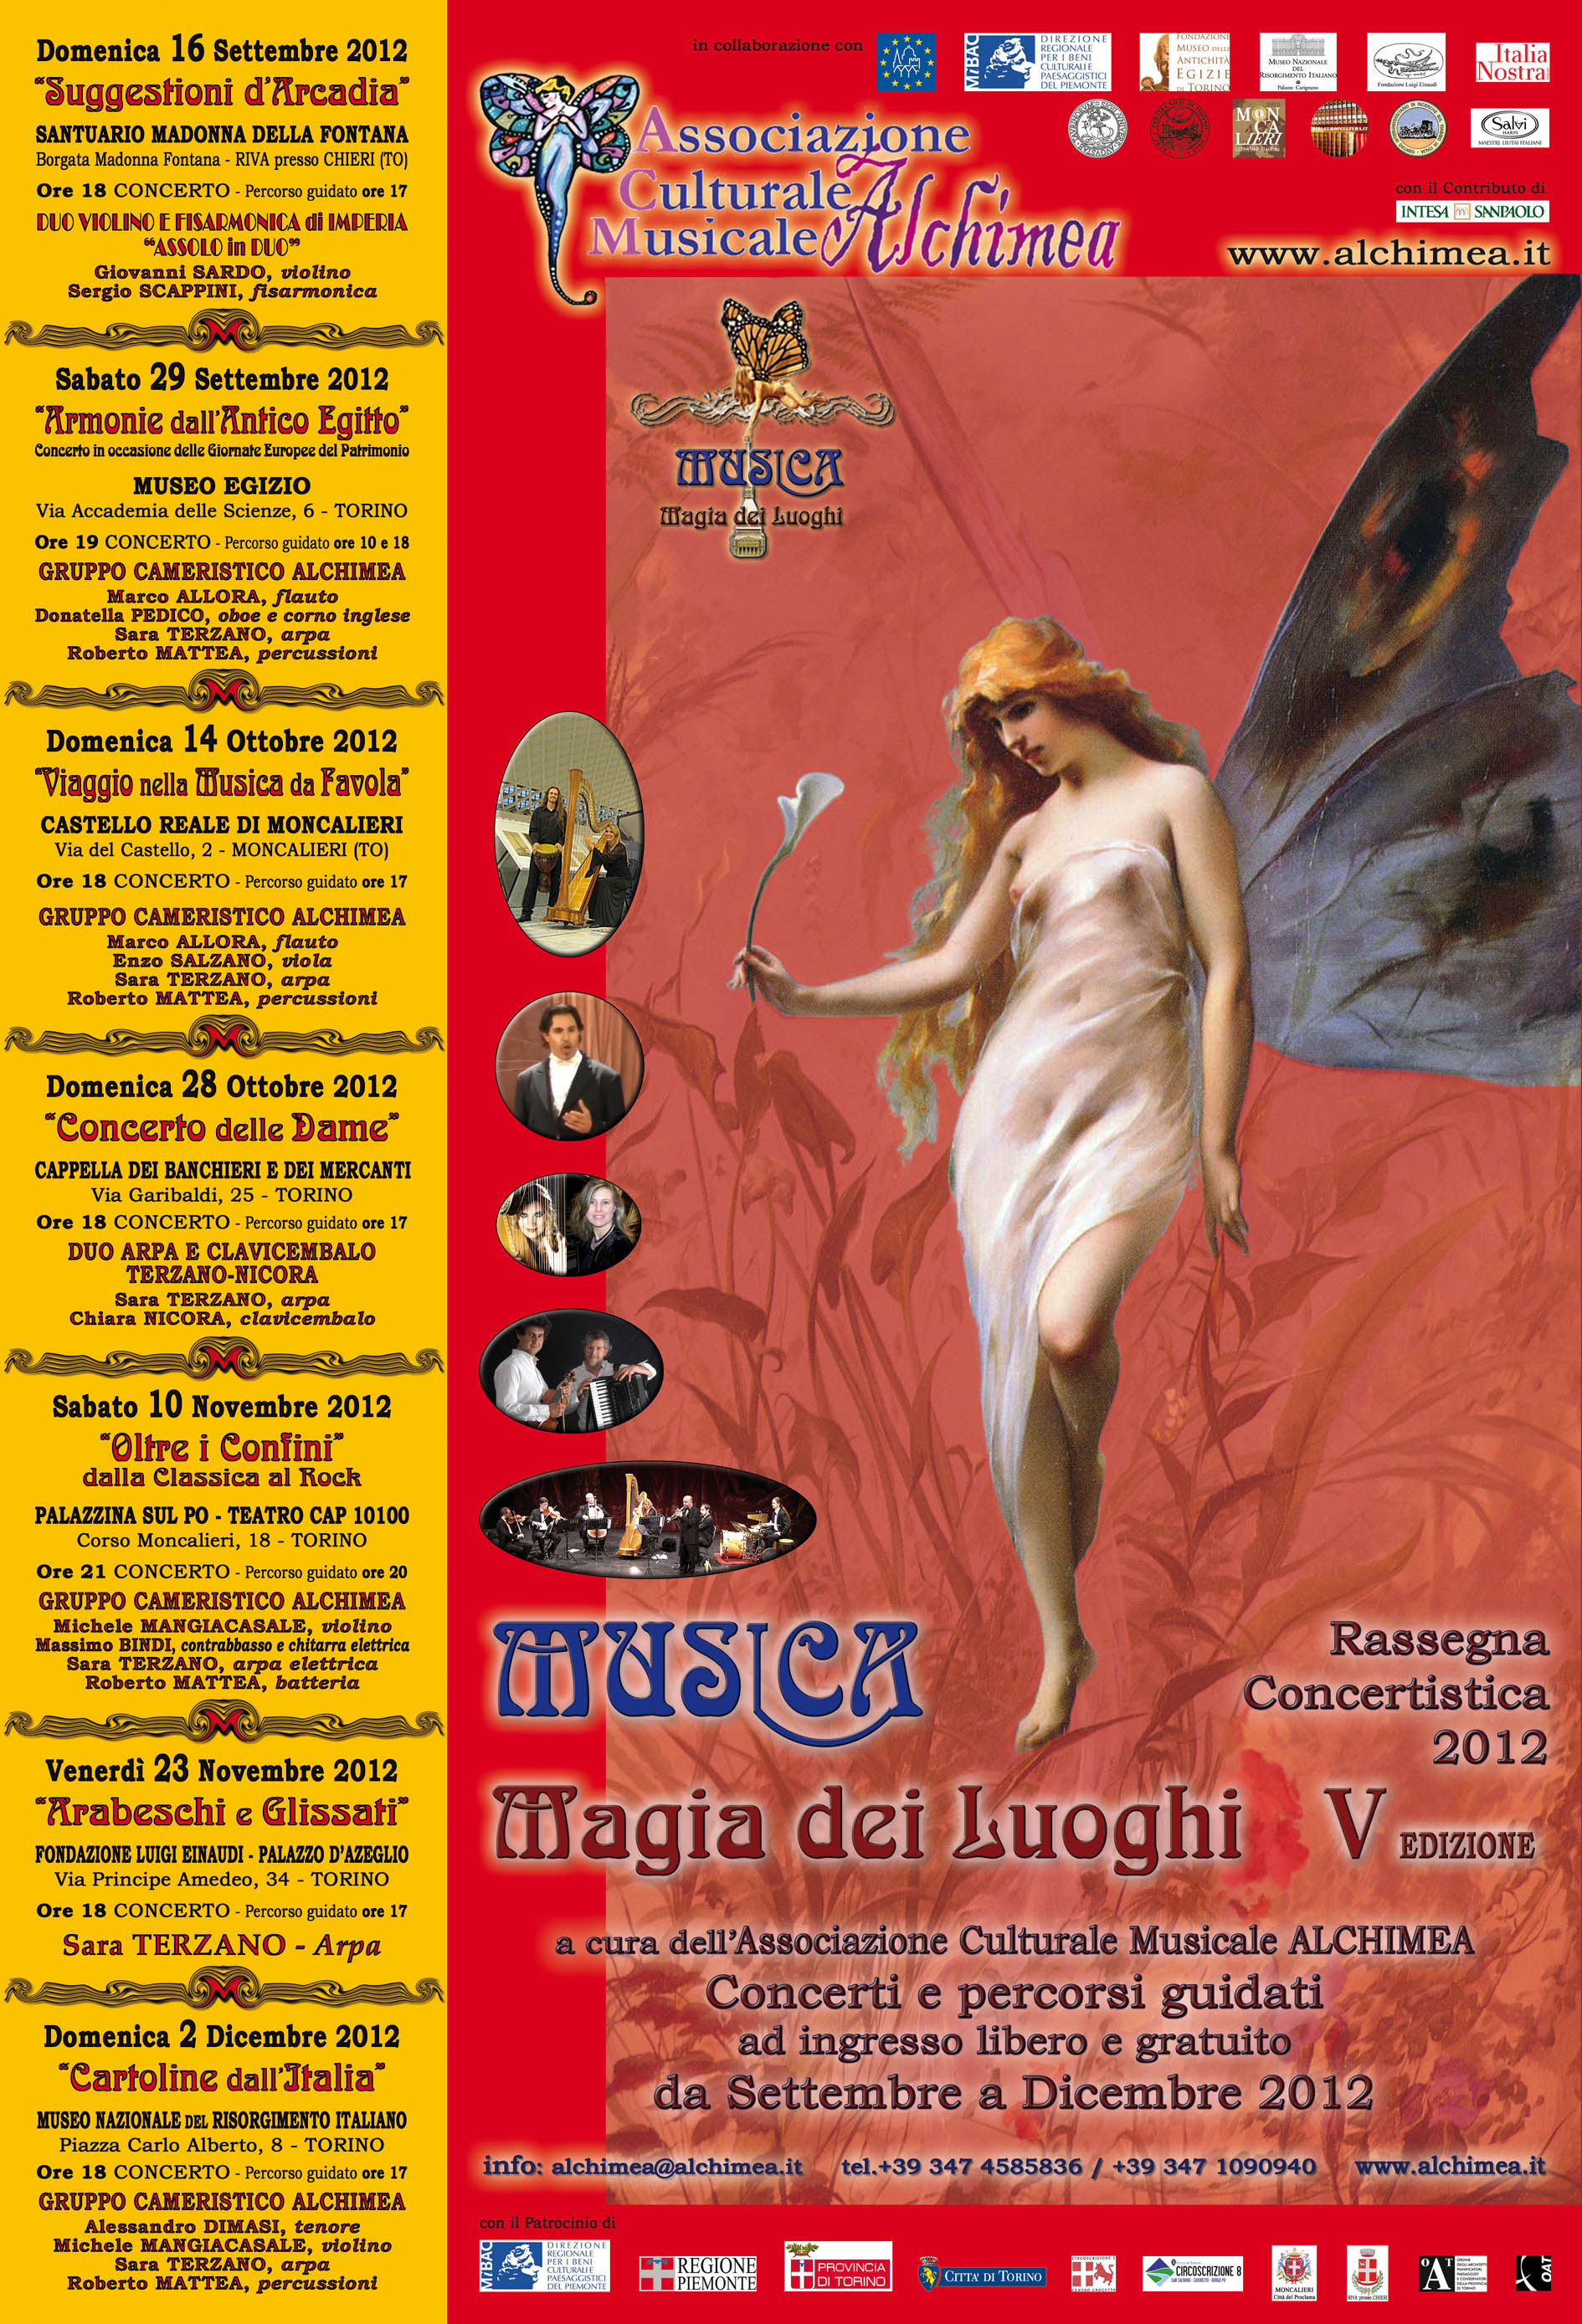 Musica Magia dei Luoghi V ALCHIMEA Locandina 2012